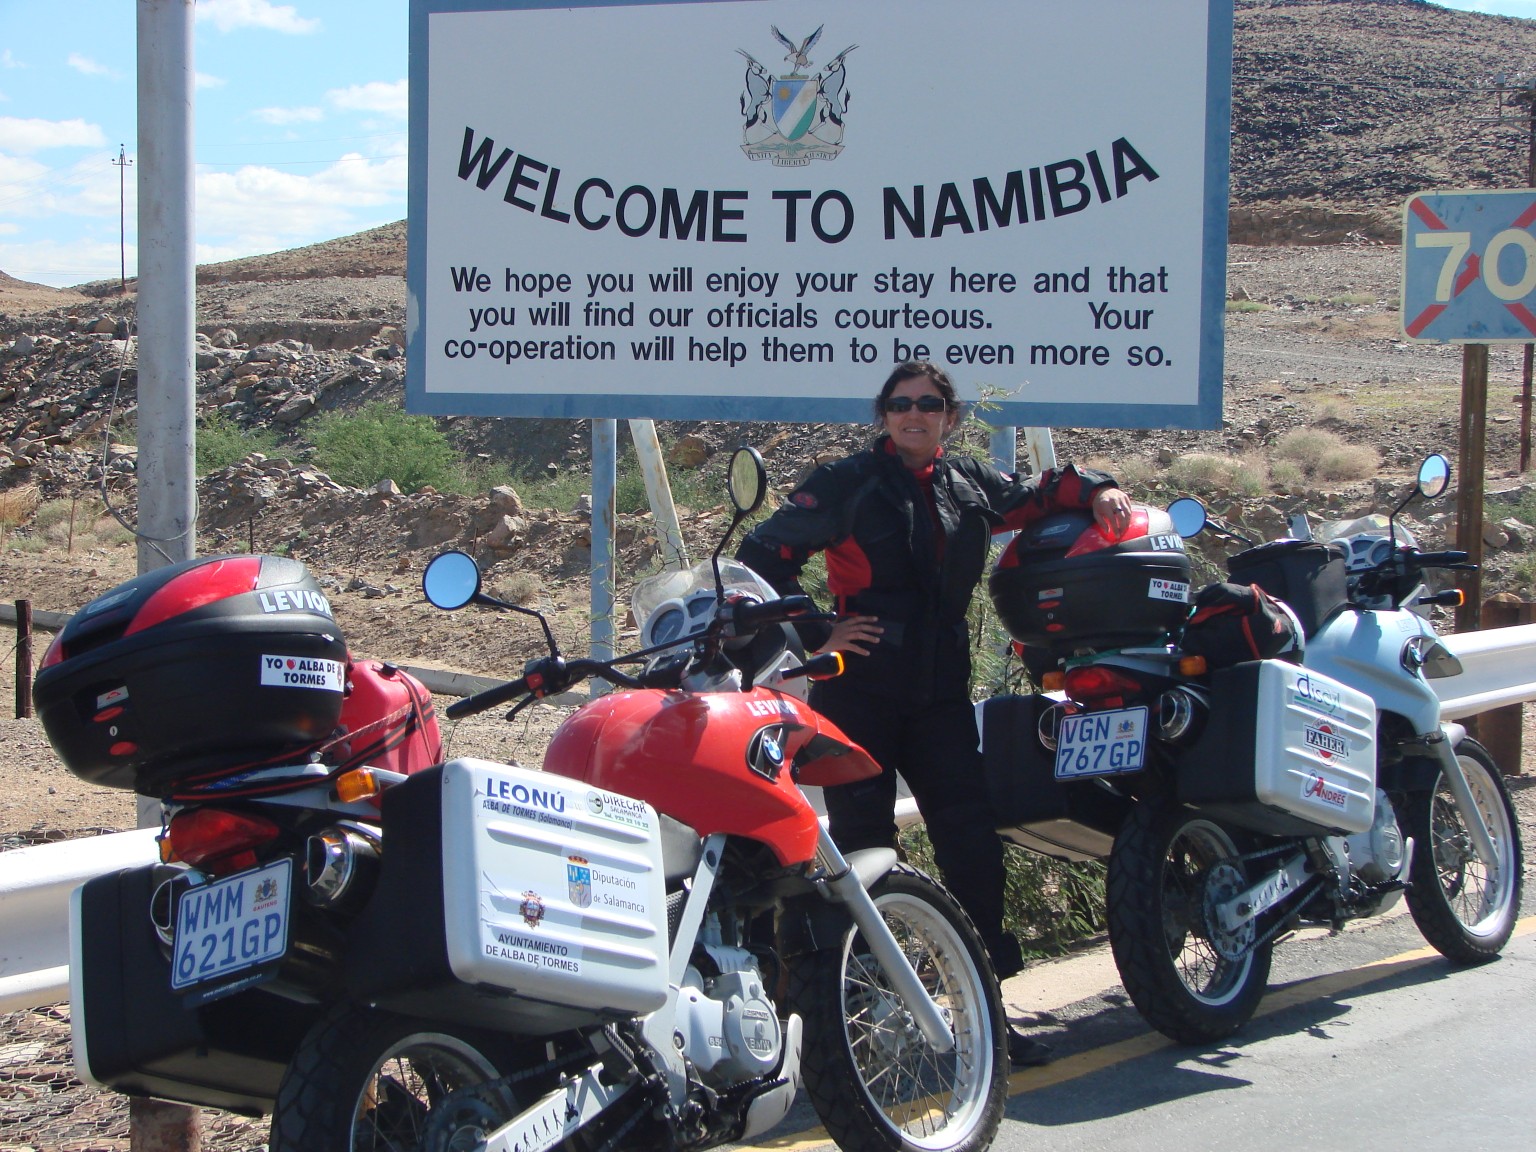 frontera-namibia-1536-x-1152.jpg